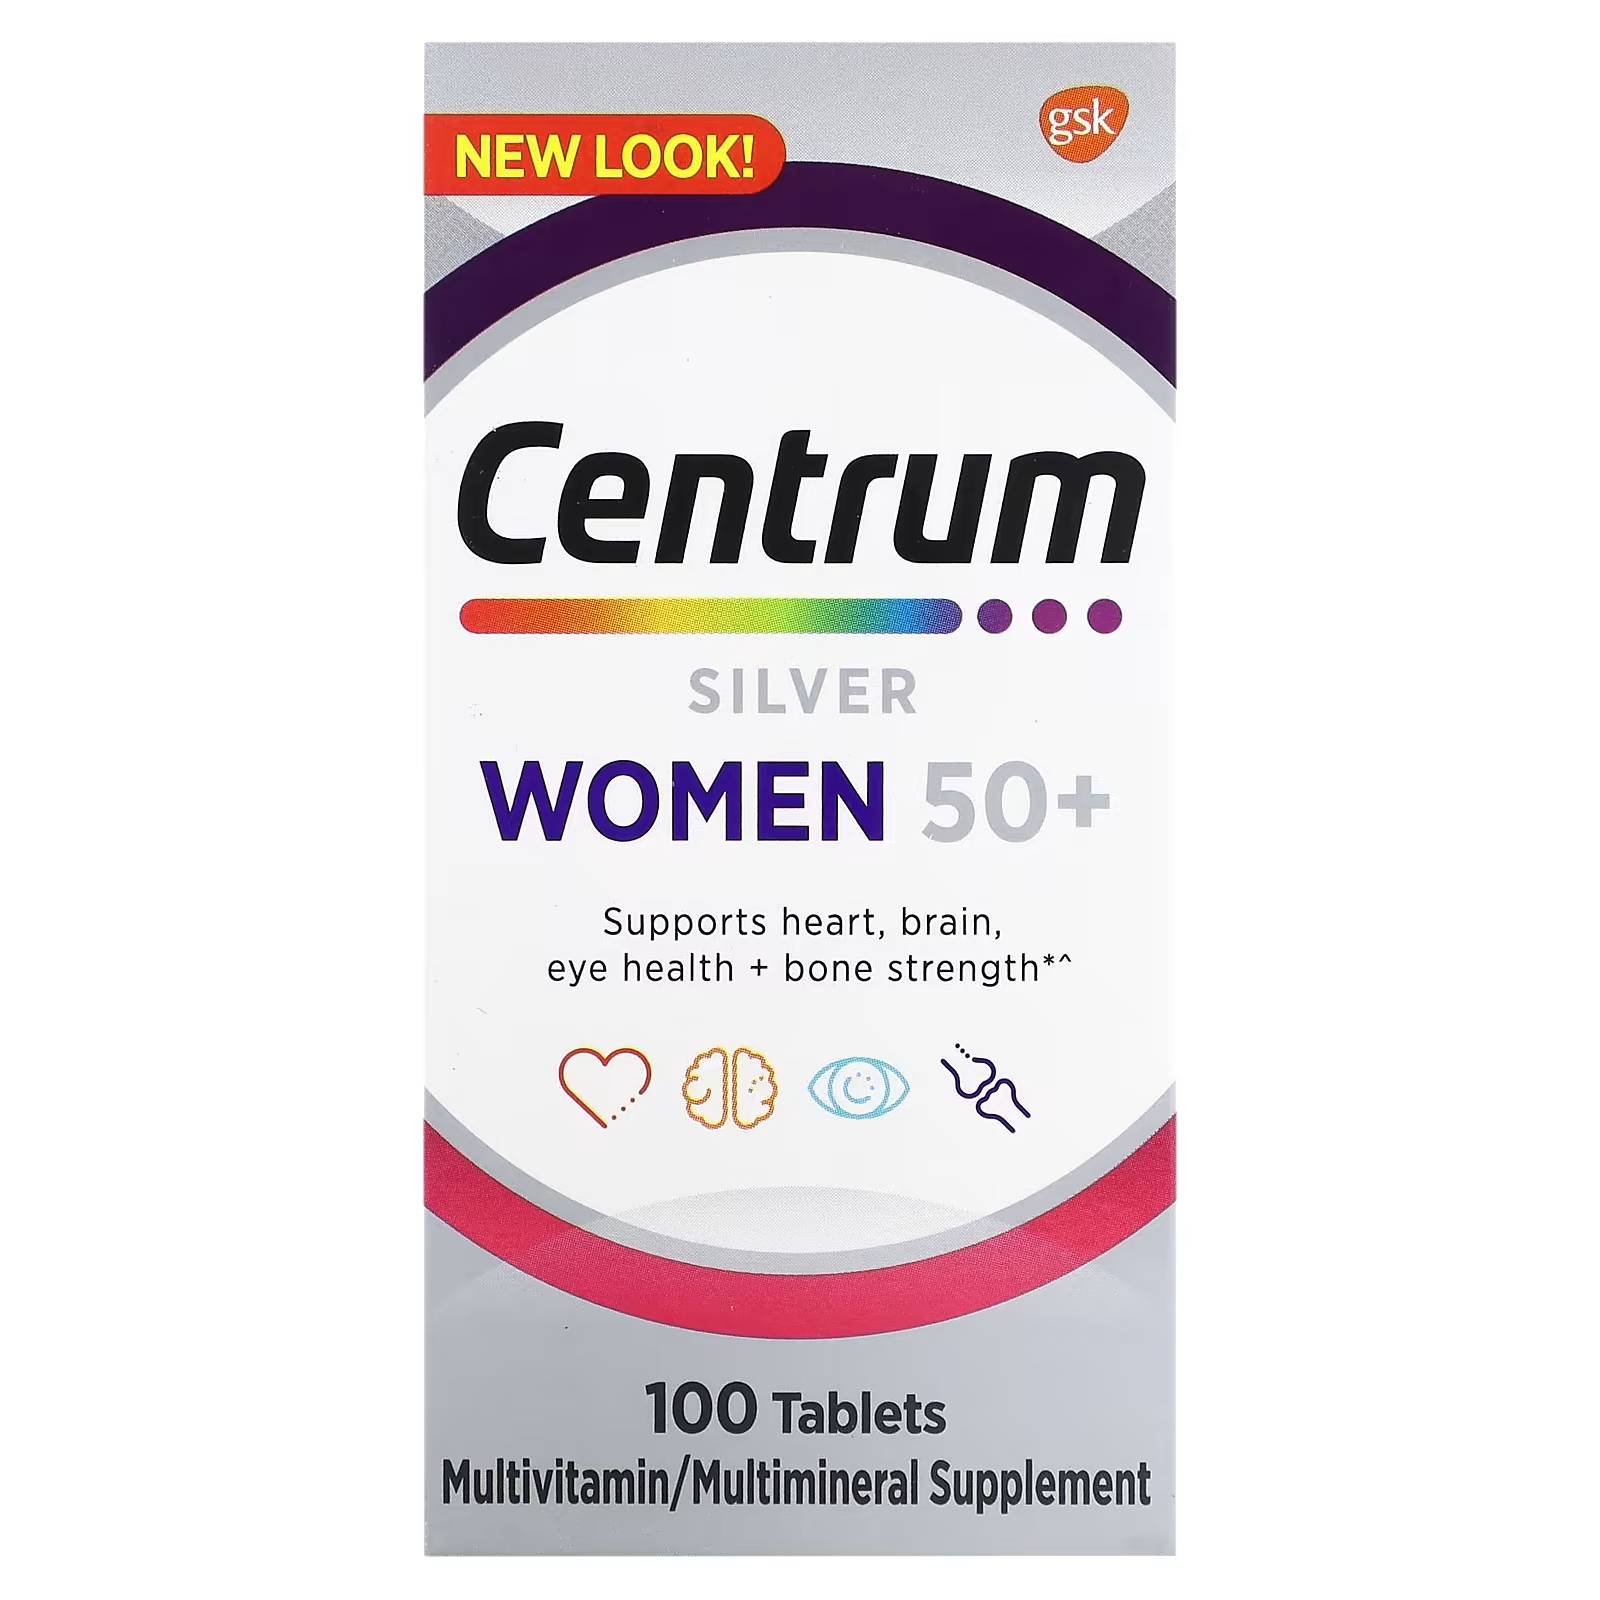 Мультивитаминная добавка Centrum Silver для женщин 50+, 100 таблеток мультивитамины centrum silver women s multivitamin supplement 2 упаковки по 65 таблеток